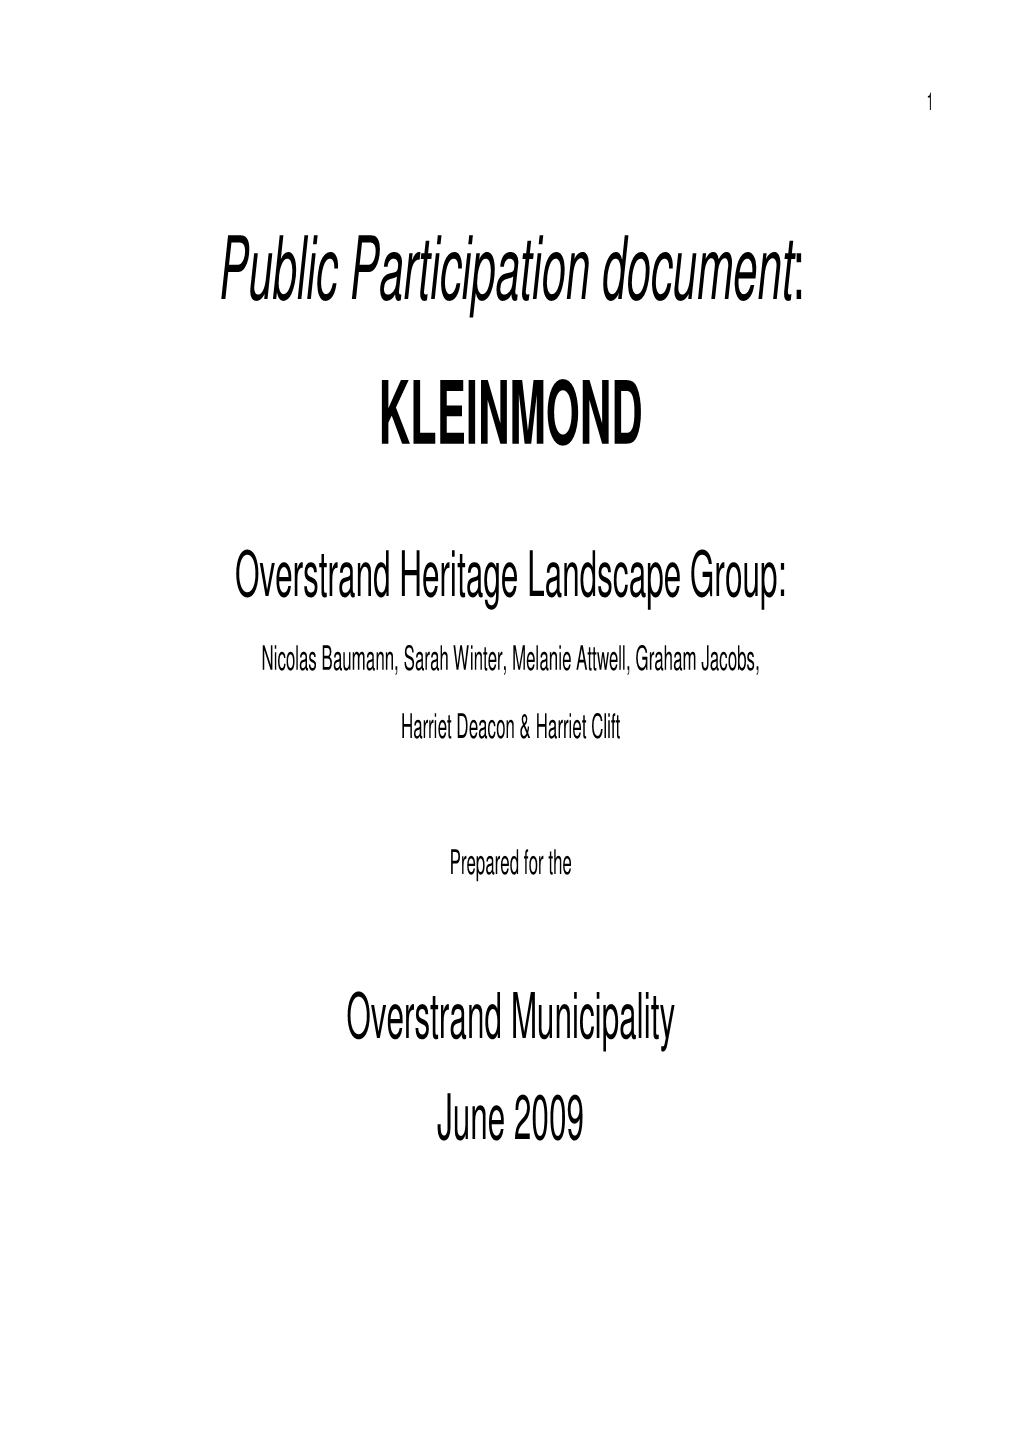 Public Participation Document: KLEINMOND